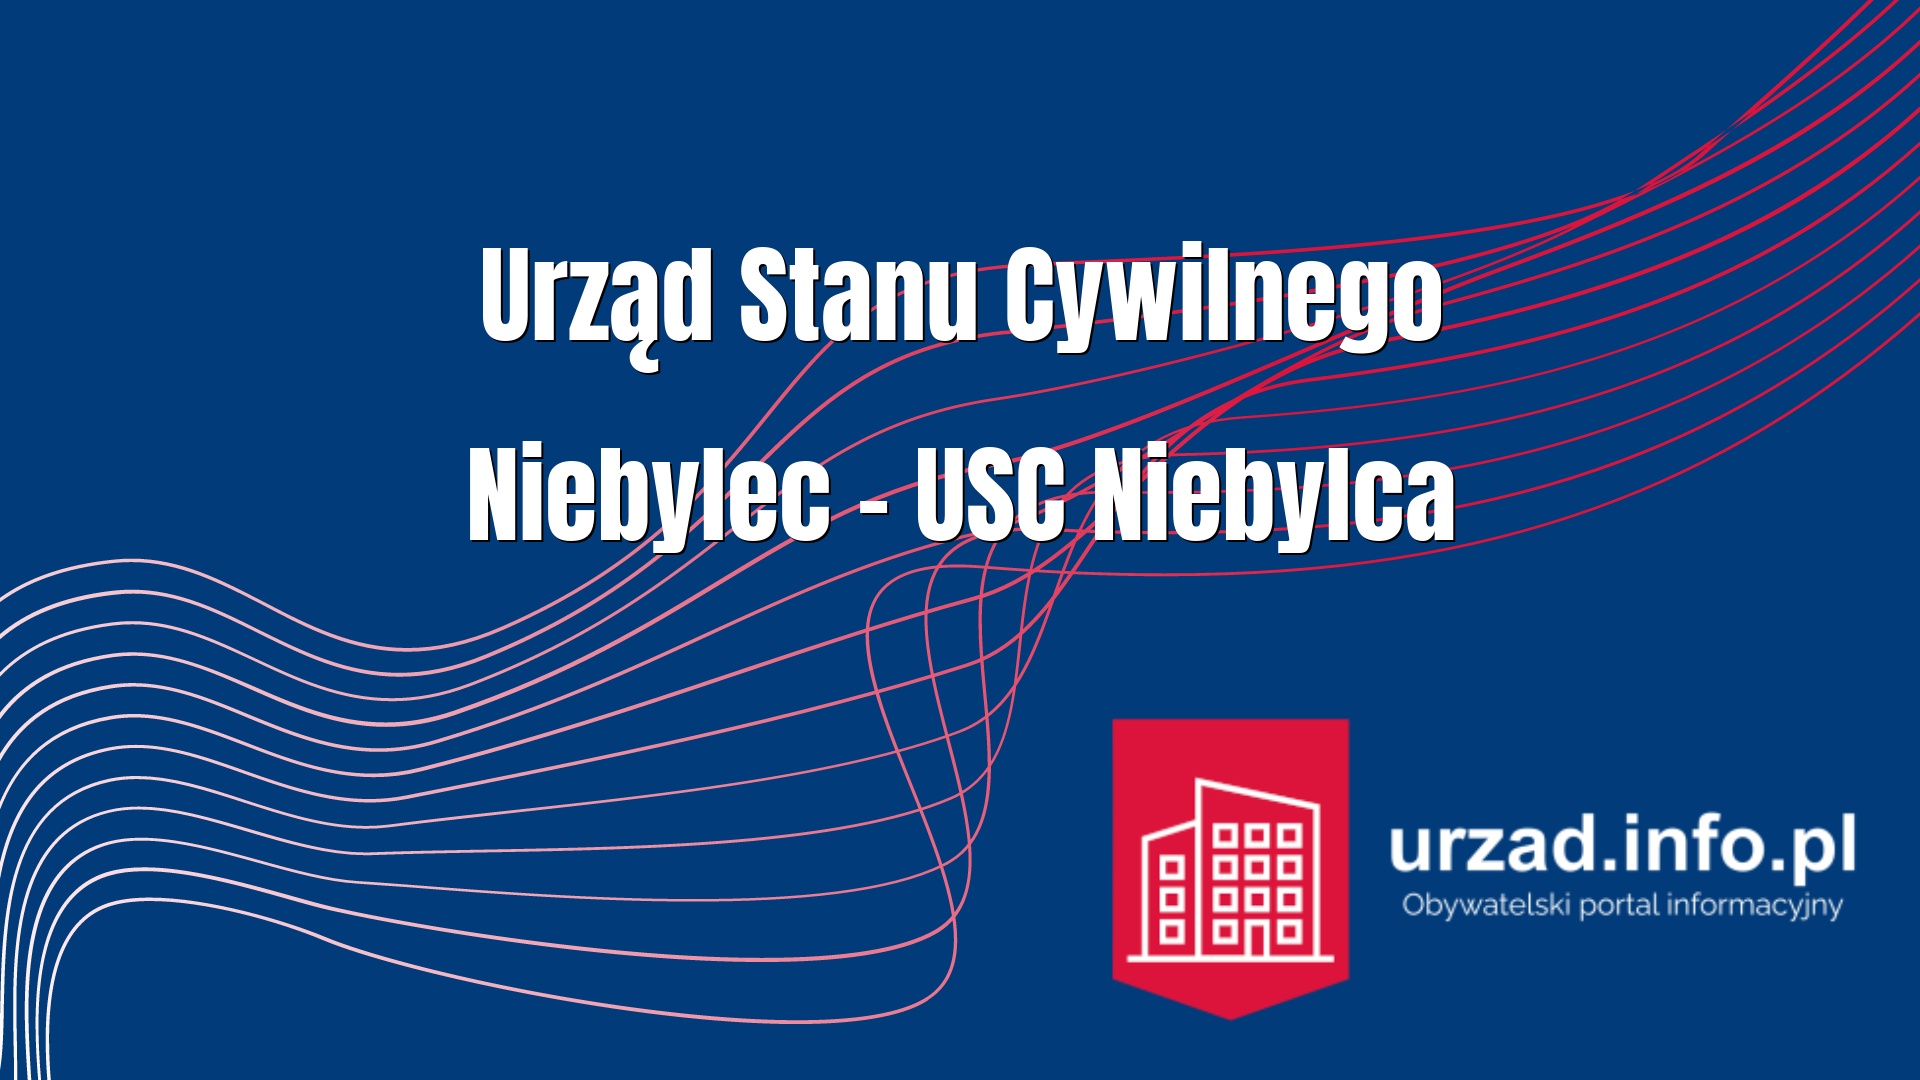 Urząd Stanu Cywilnego Niebylec – USC Niebylca